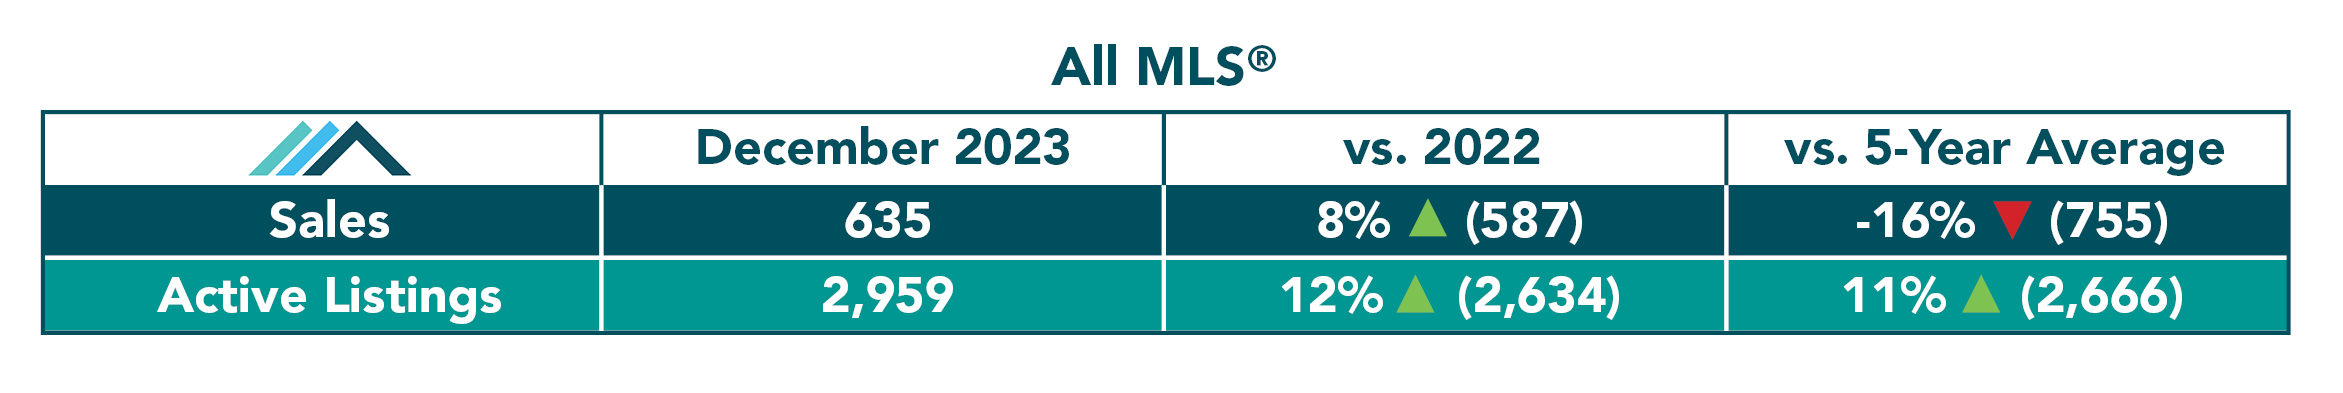 All MLS Table December 2023